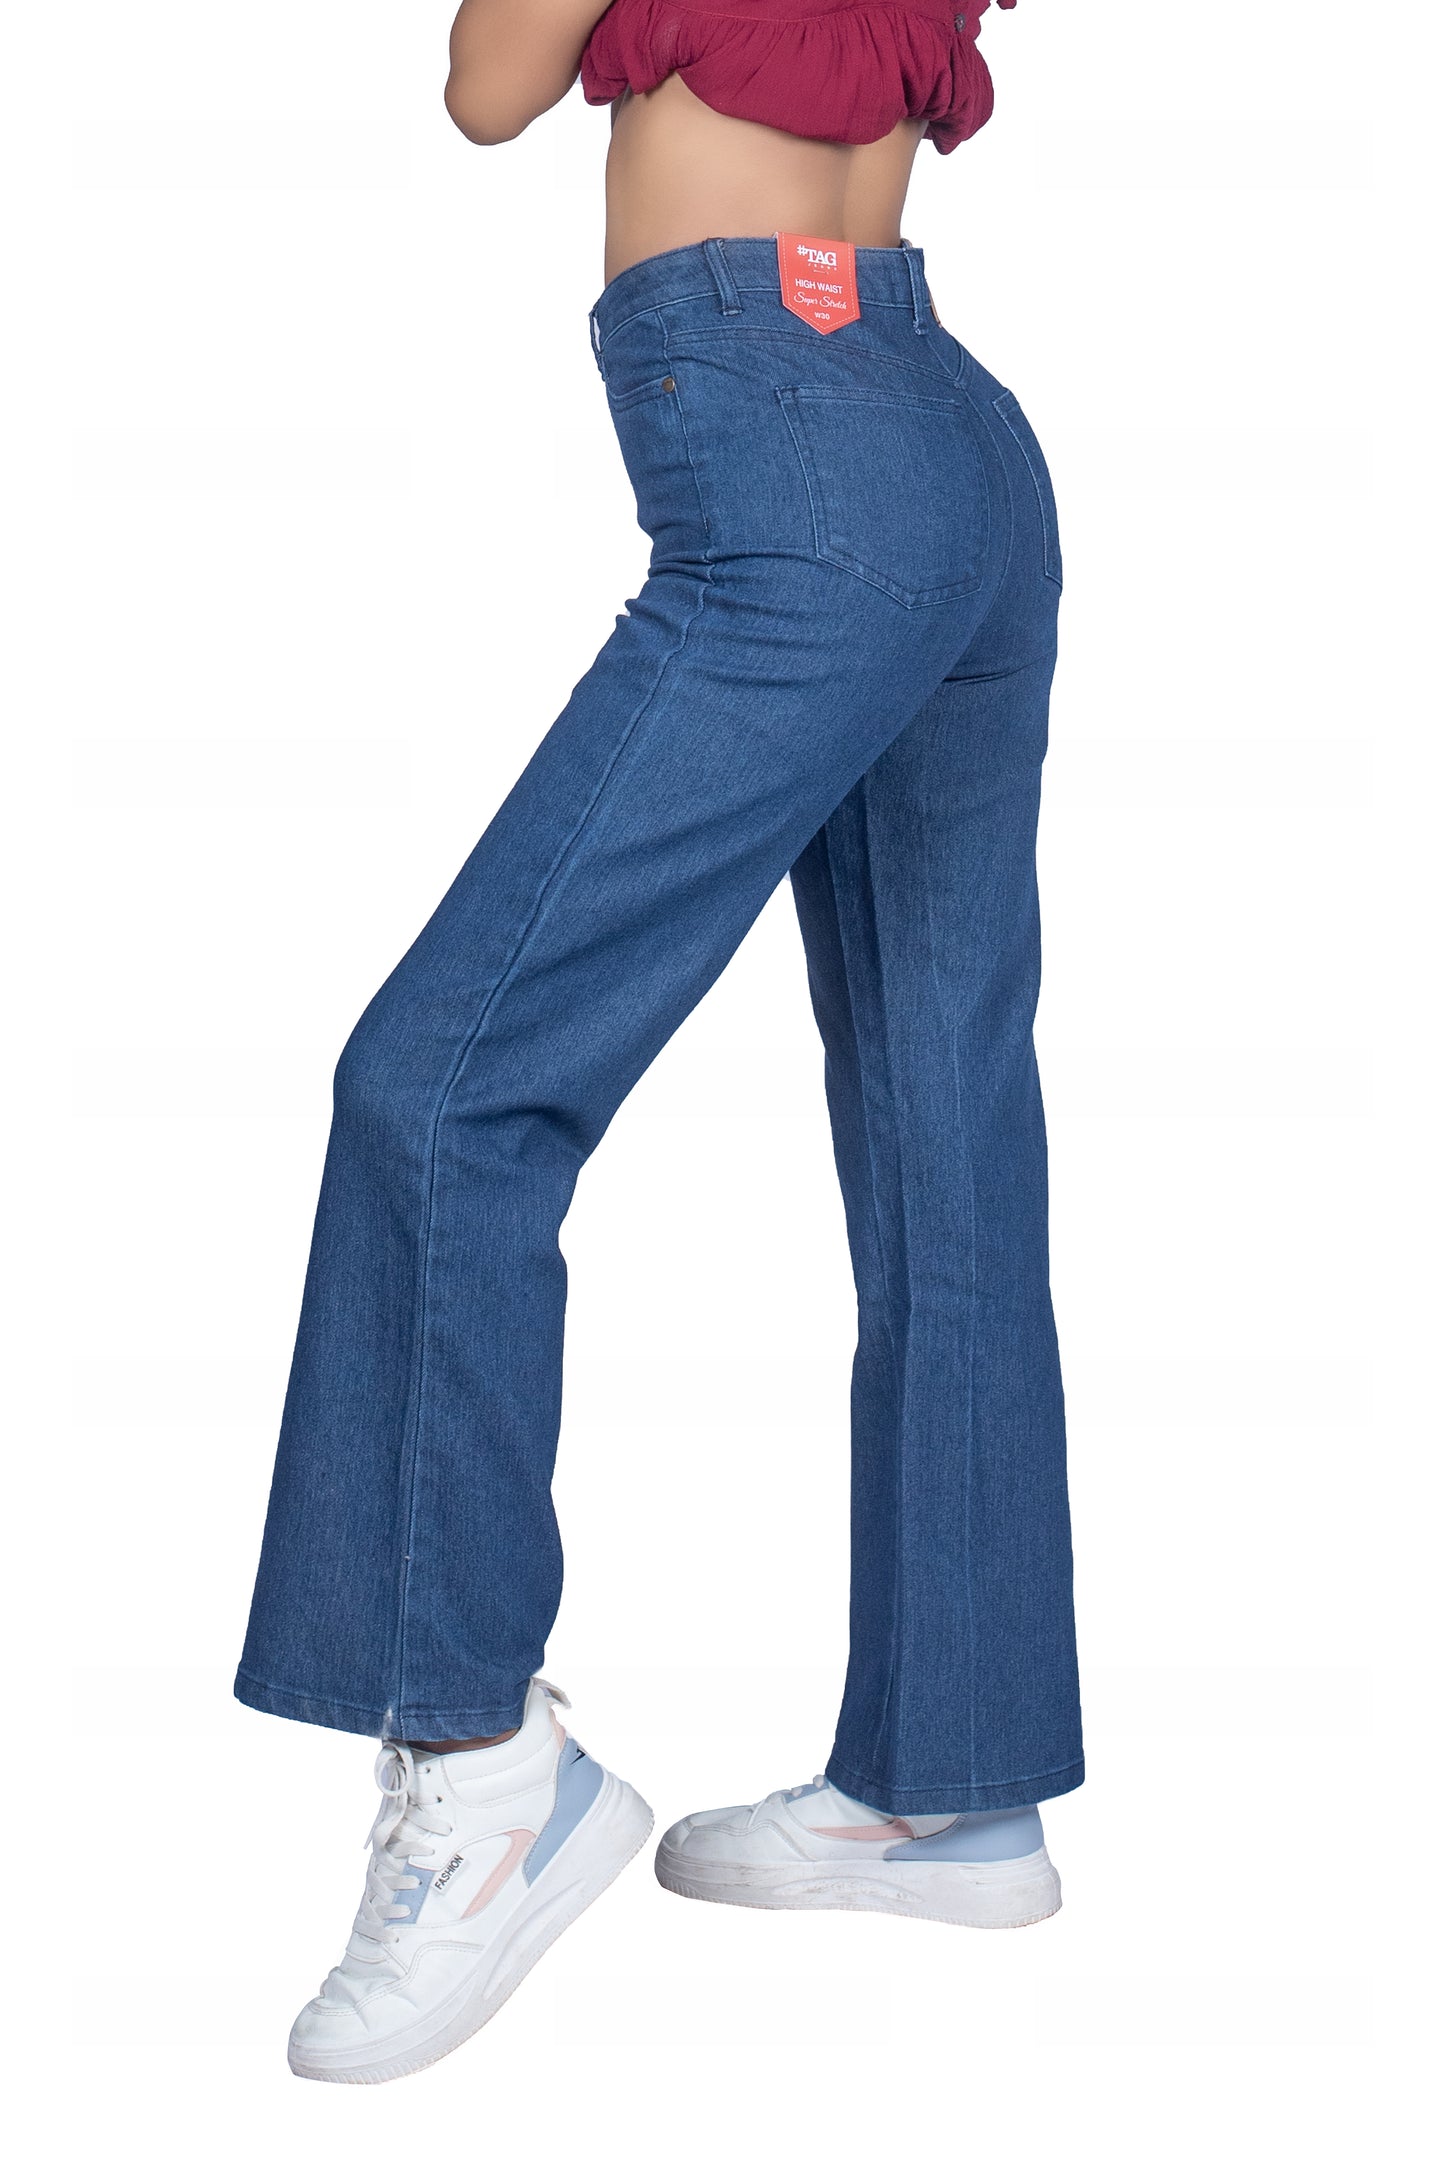 Ladies High-waist Flared Jeans - Dark Blue Wash